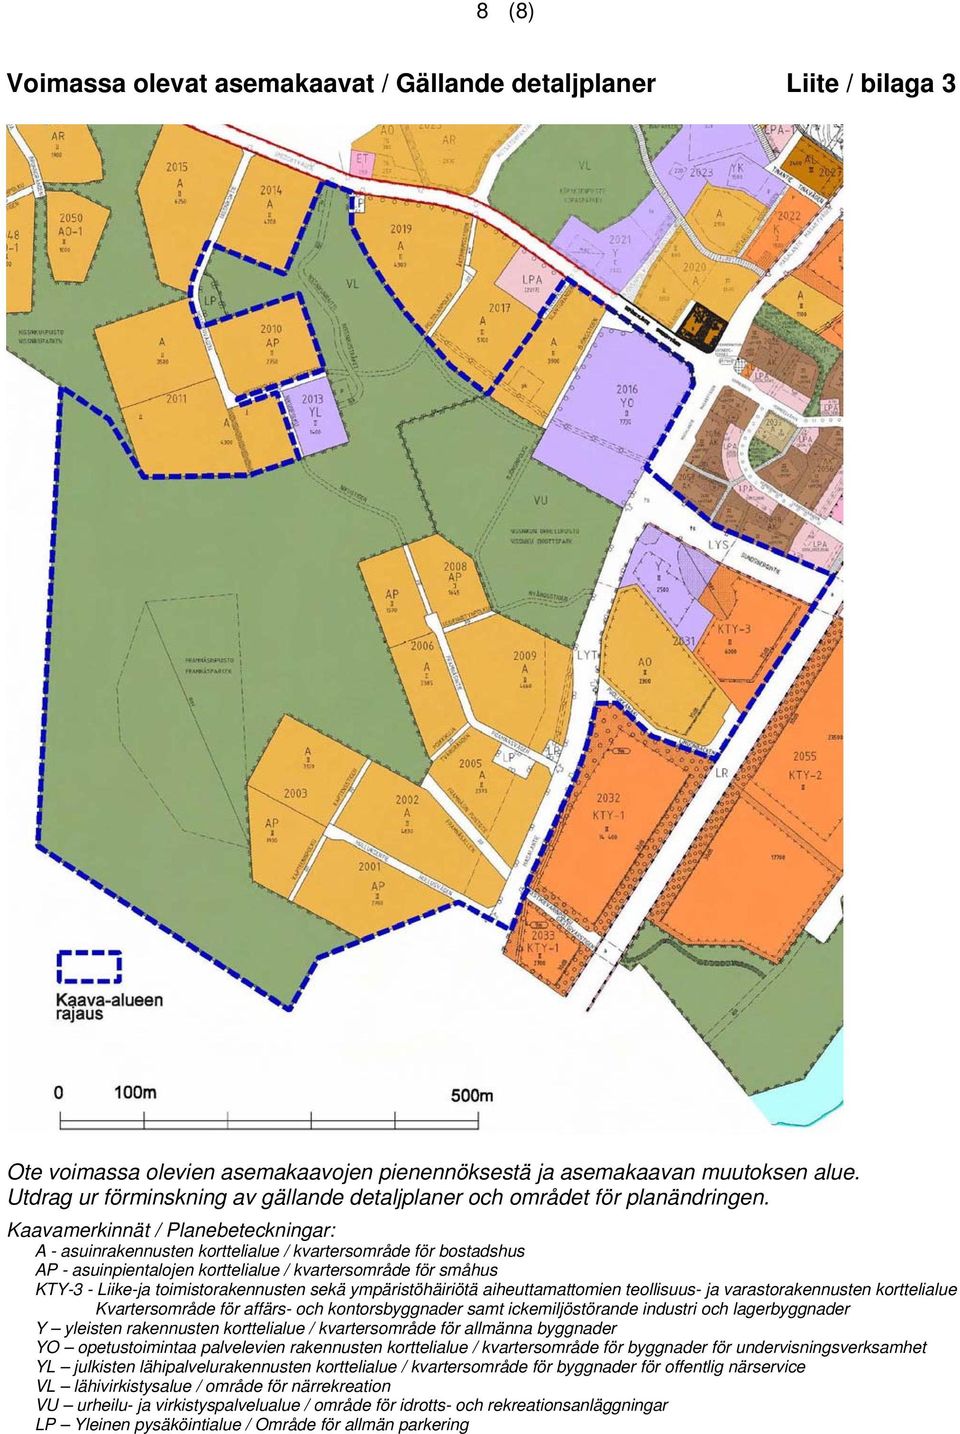 Kaavamerkinnät / Planebeteckningar: A - asuinrakennusten korttelialue / kvartersområde för bostadshus AP - asuinpientalojen korttelialue / kvartersområde för småhus KTY-3 - Liike-ja